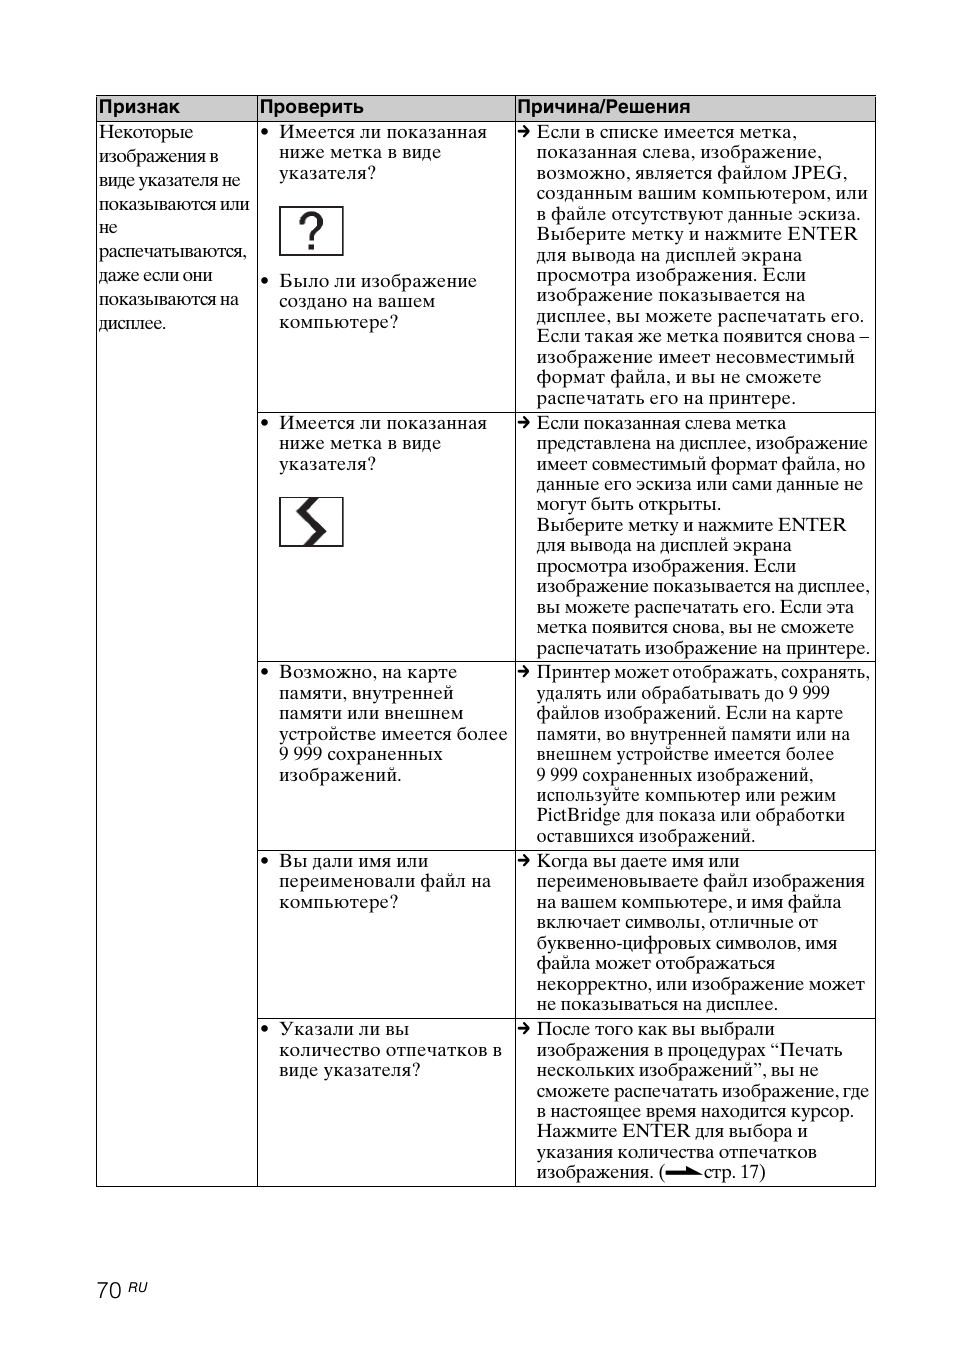 Инструкция по эксплуатации Sony DPP-FP97 | Страница 70 / 92